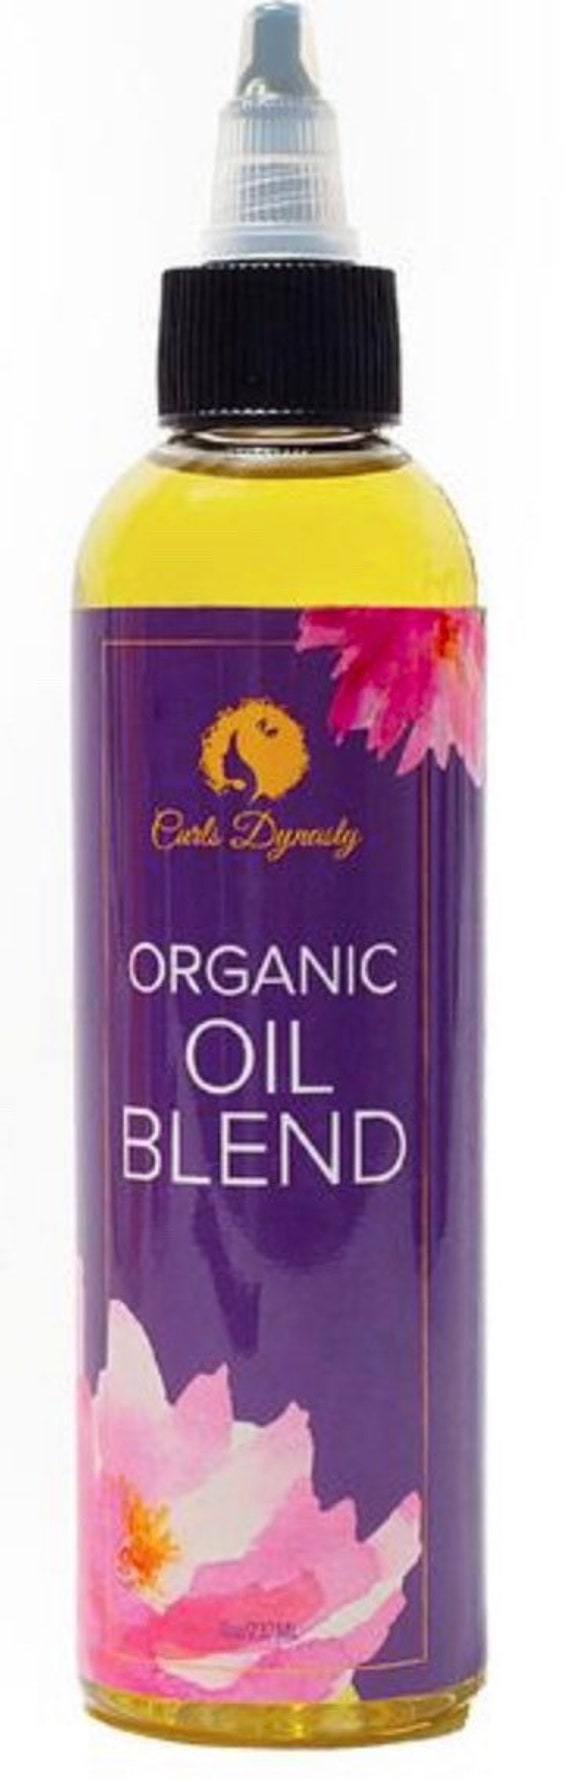 Curls Dynasty Organic Oil Blend 4 Oz